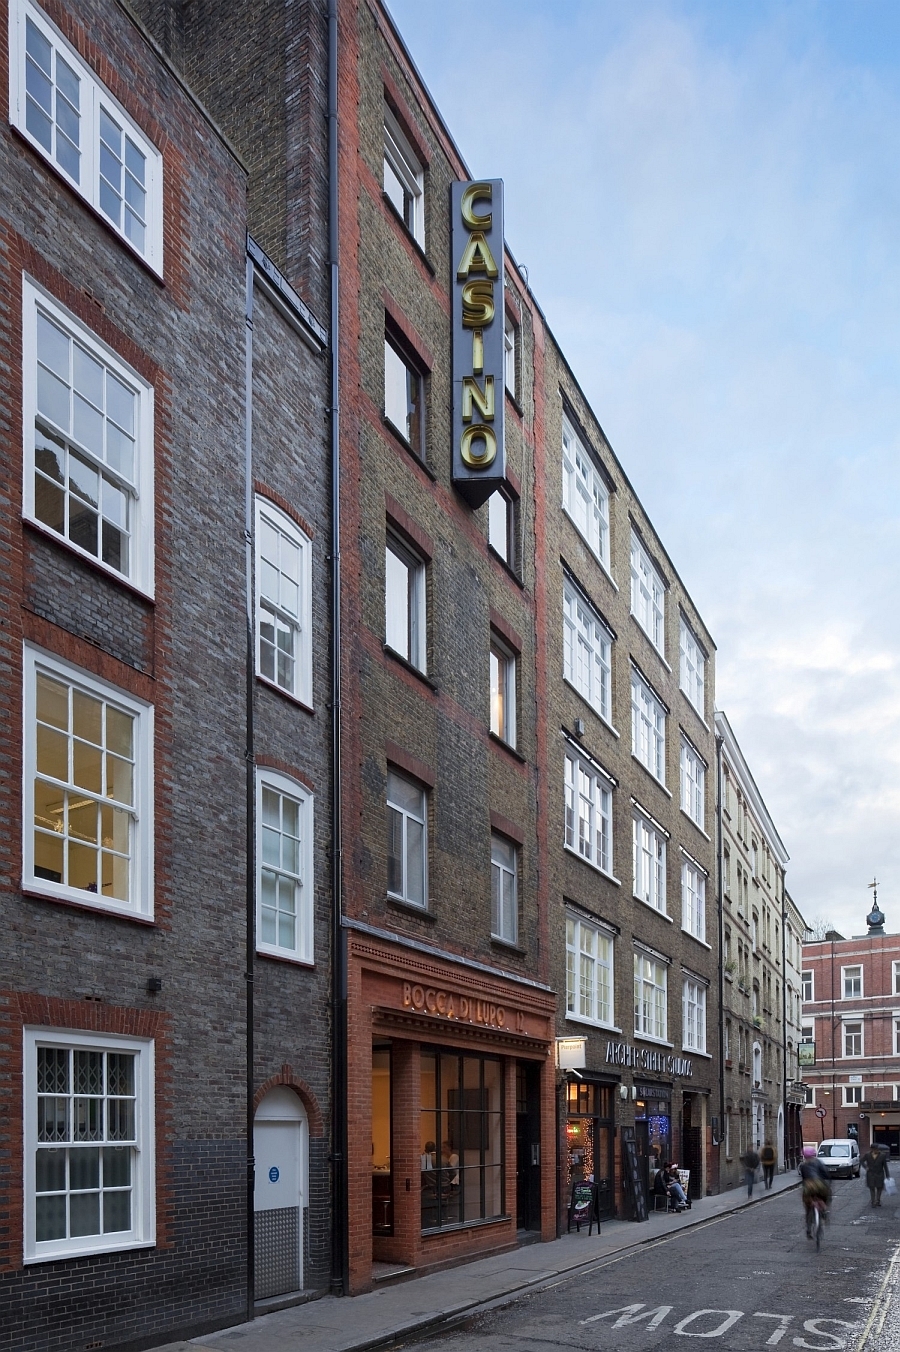 Холостяцкая квартира в Лондоне: кирпичные стены и мотоцикл